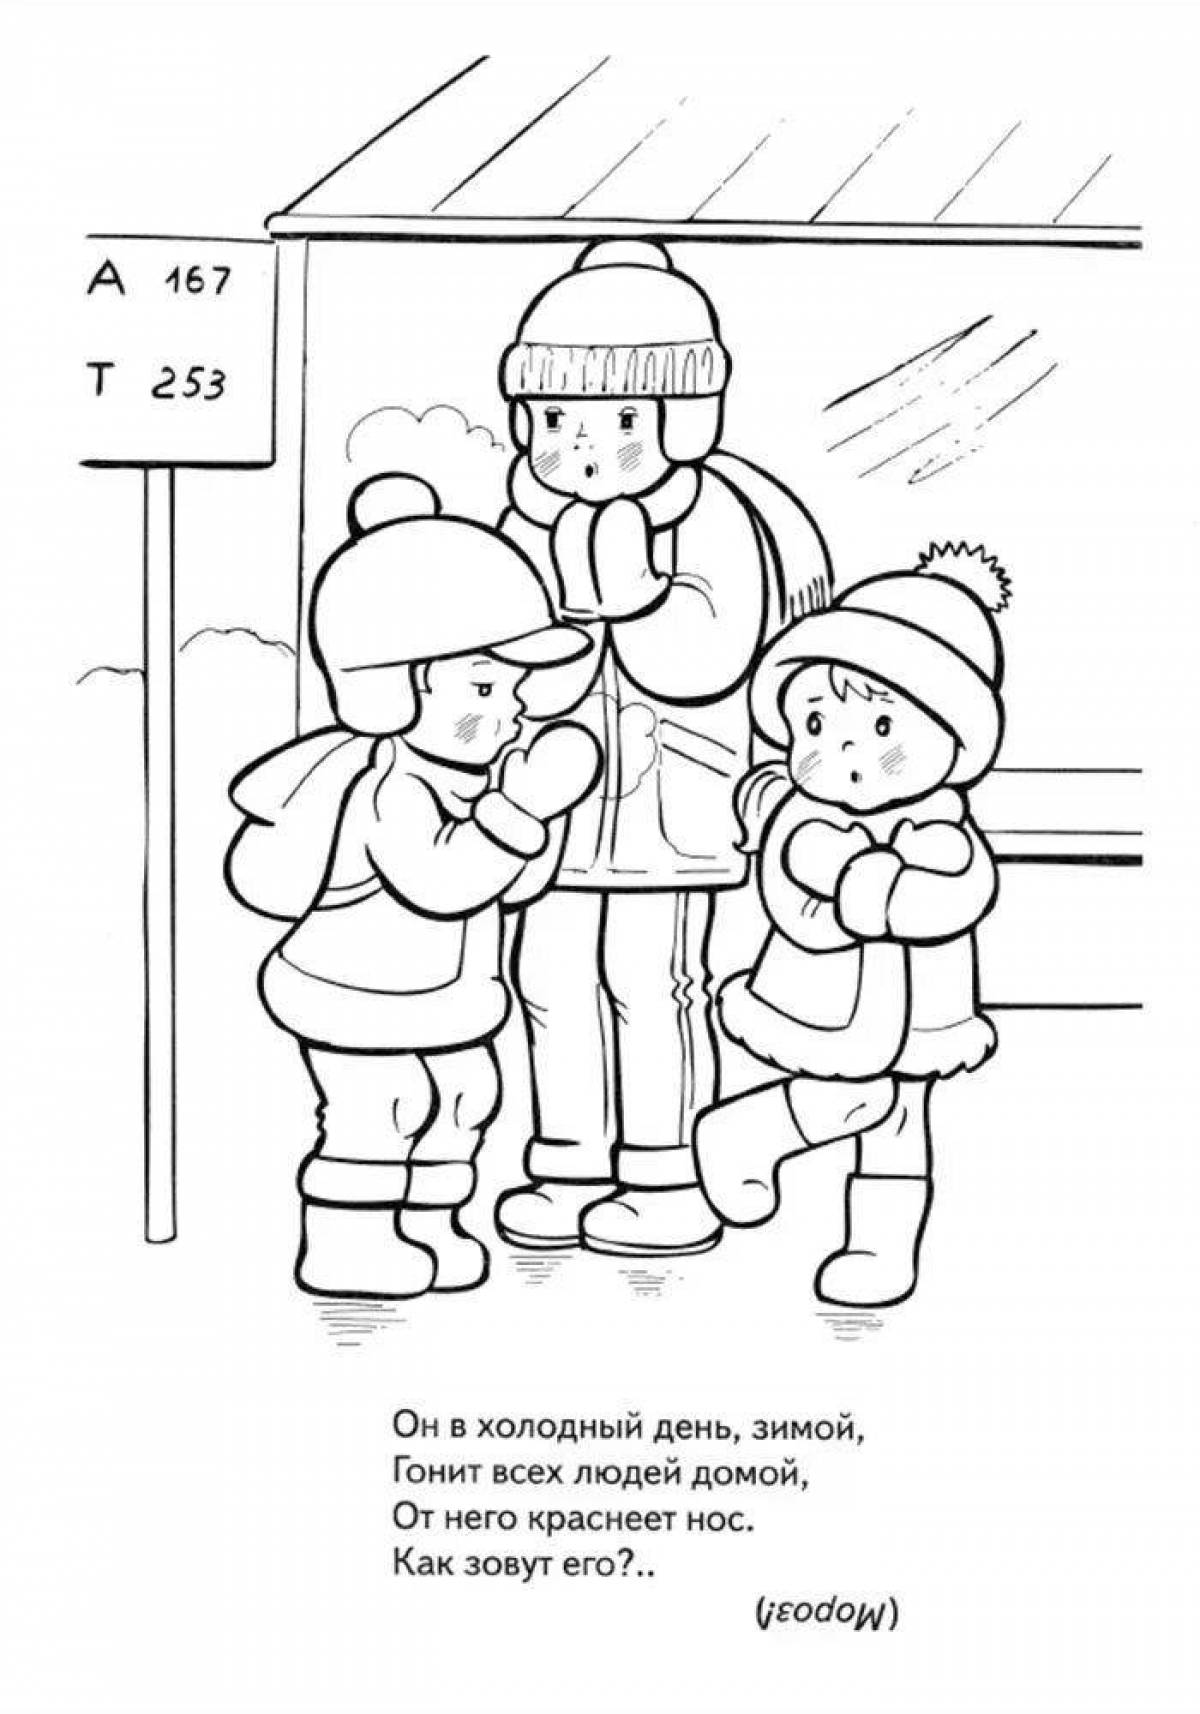 Child safety in winter #7